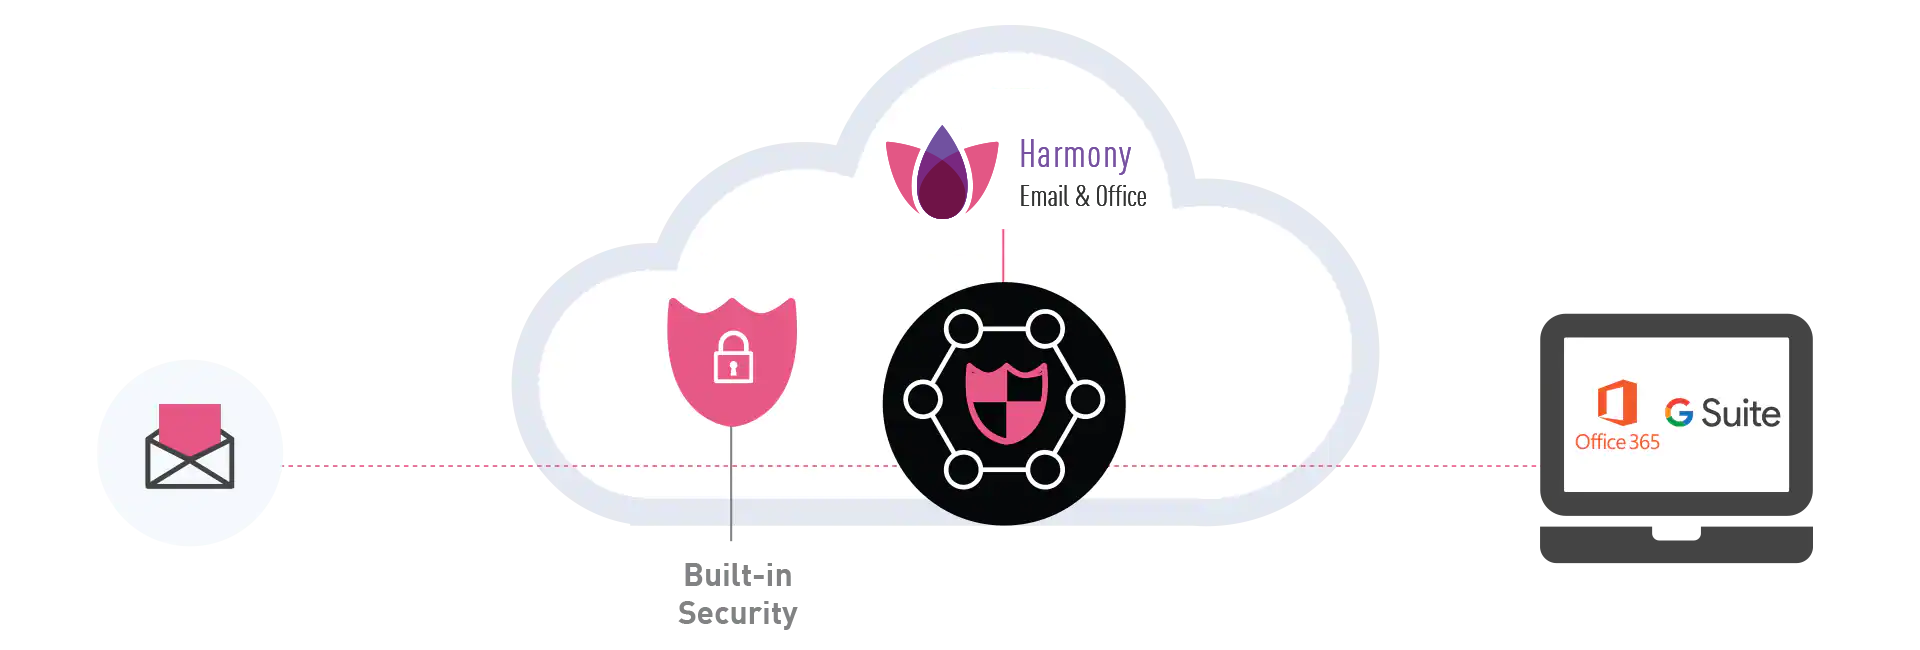 Диаграмма Harmony Email & Office со встроенной безопасностью